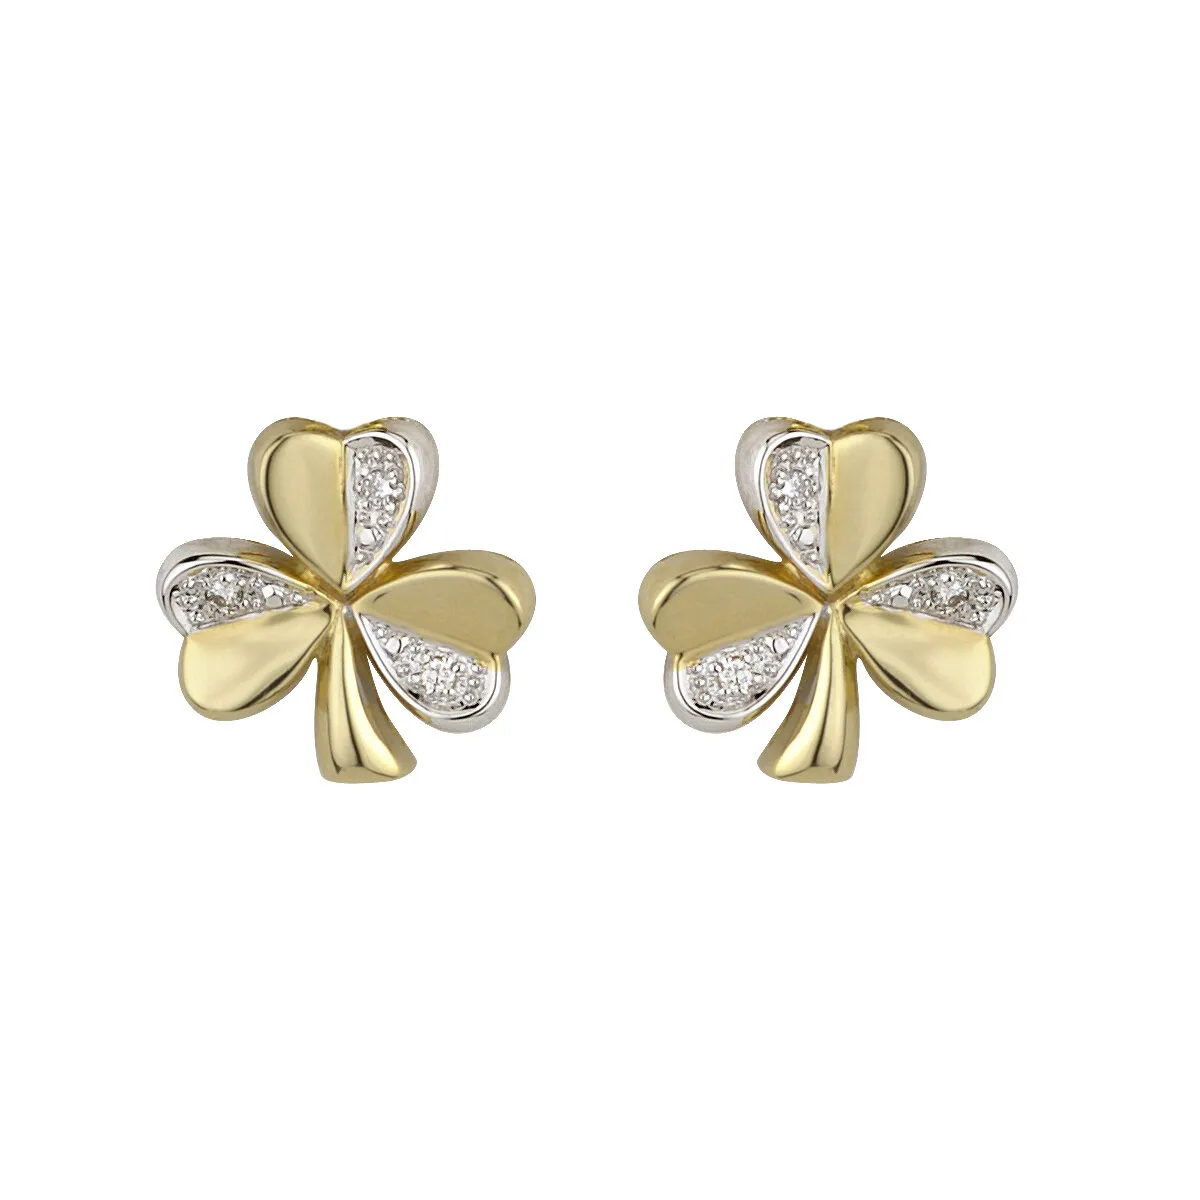 Two Tone Gold Diamond Shamrock Earrings1